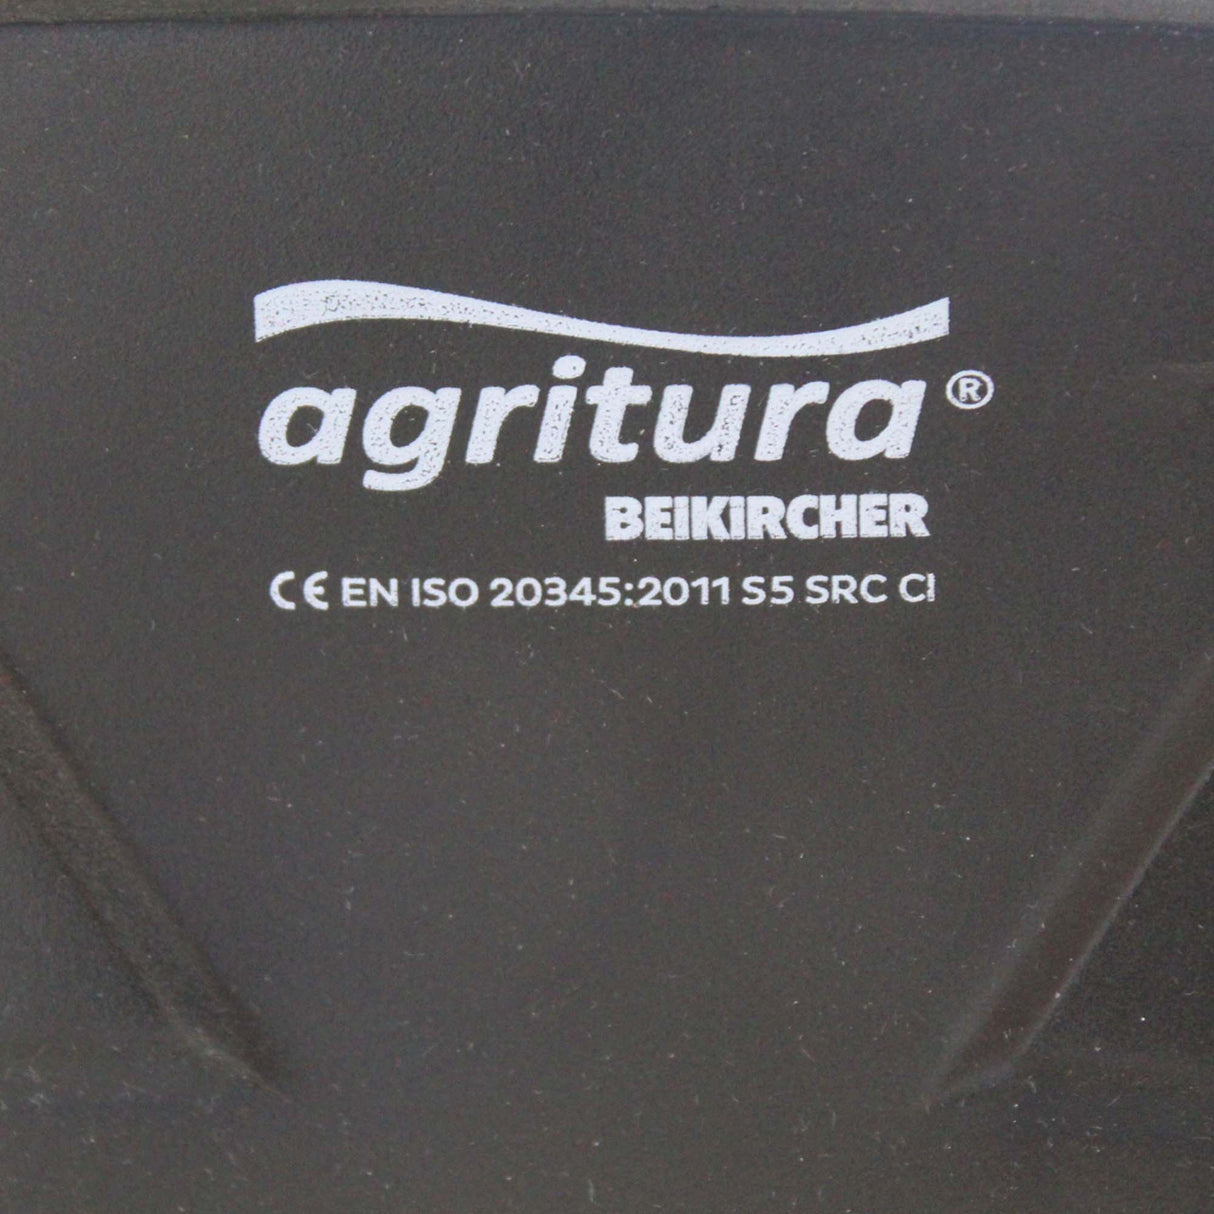 Agritura S5 Thermo Grüne Stiefel – Hohe Qualität für landwirtschaftliche Arbeiten